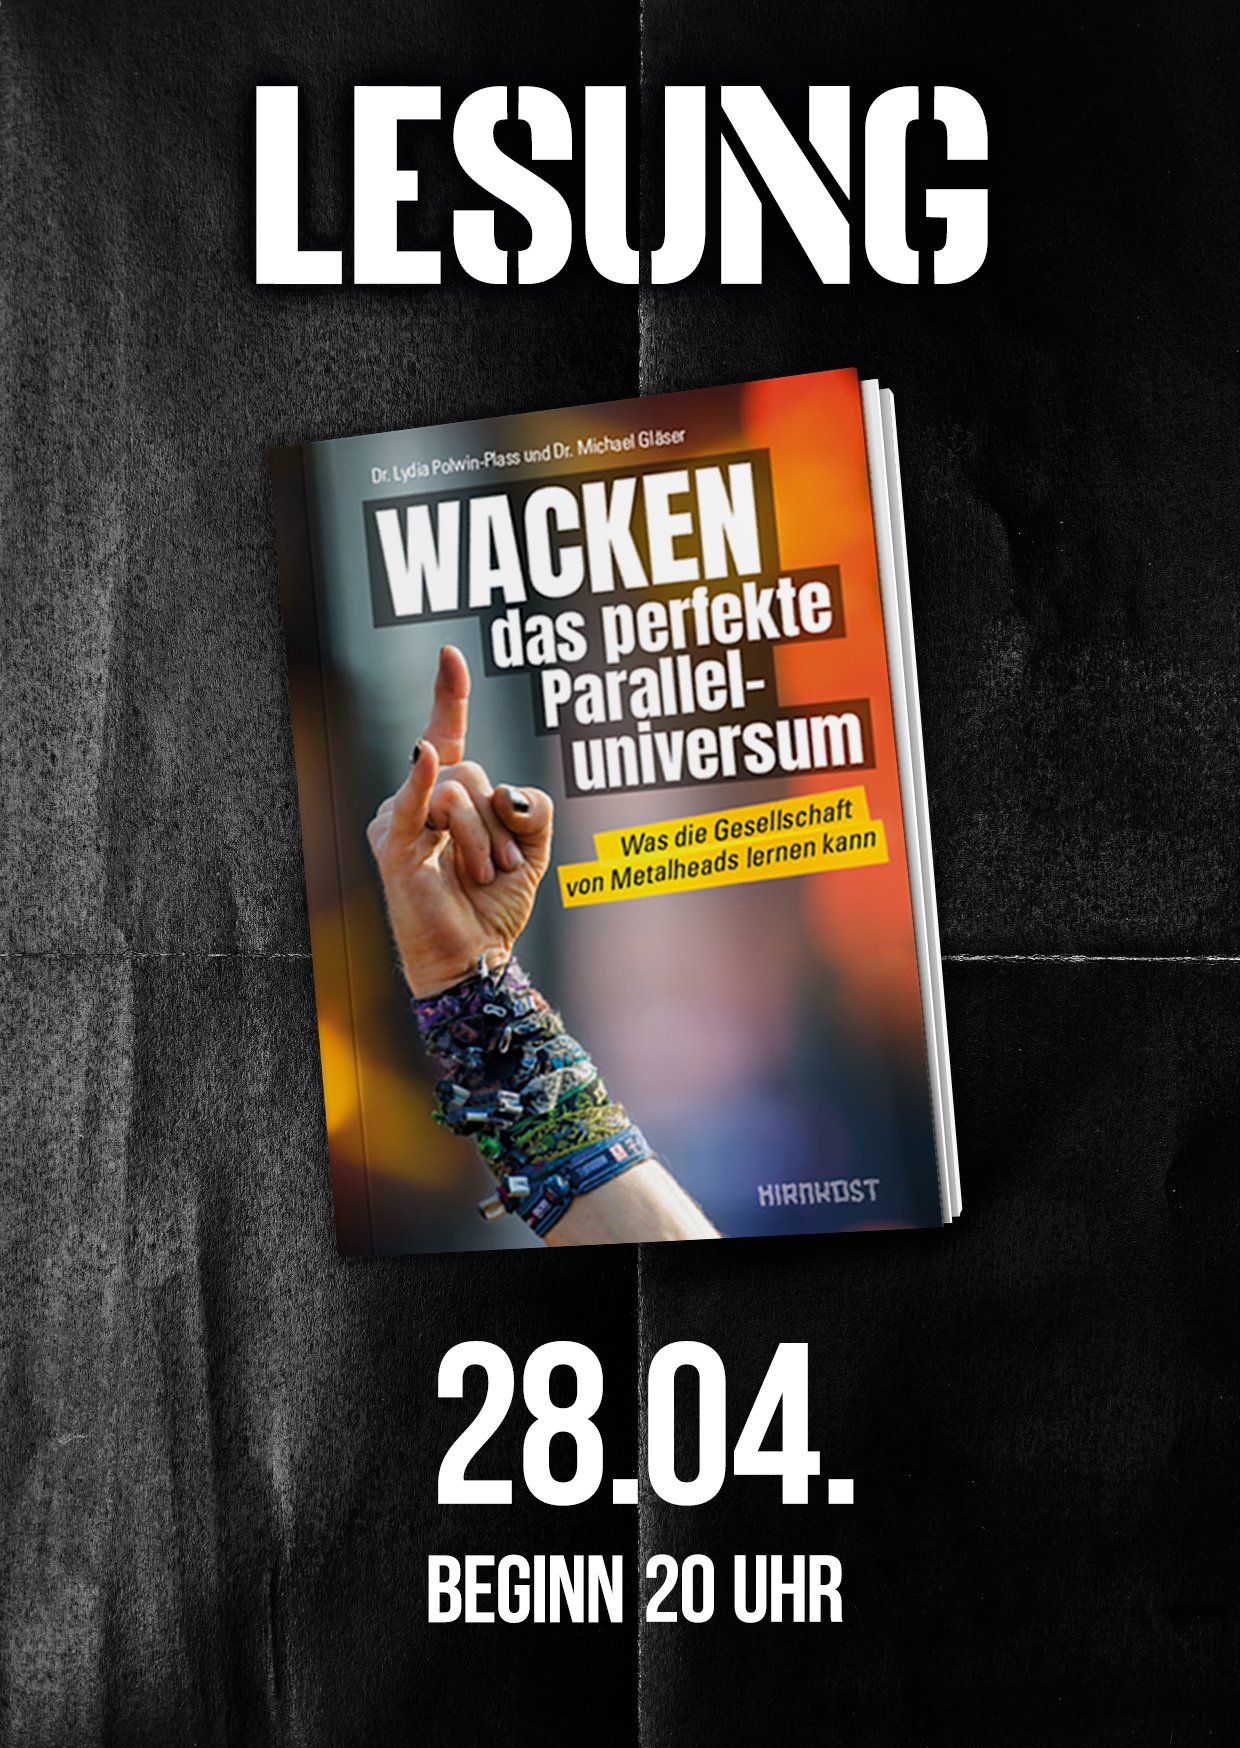 Lesung 28.04. im LGH Wacken - "Wacken - das perfekte Paralleluniversum"